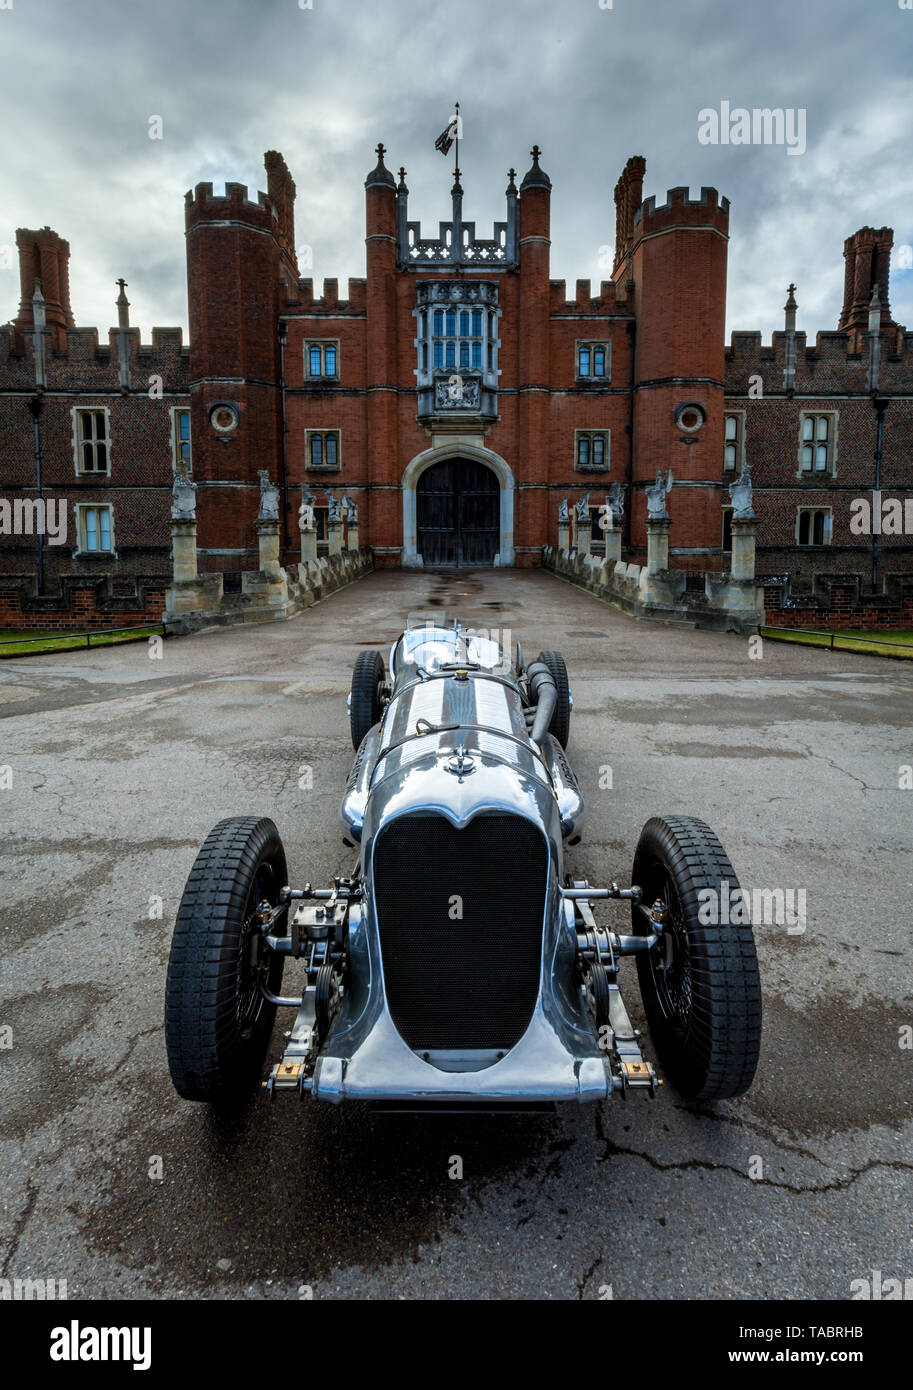 Napier Railton racing car a Hampton Court Palace Foto Stock